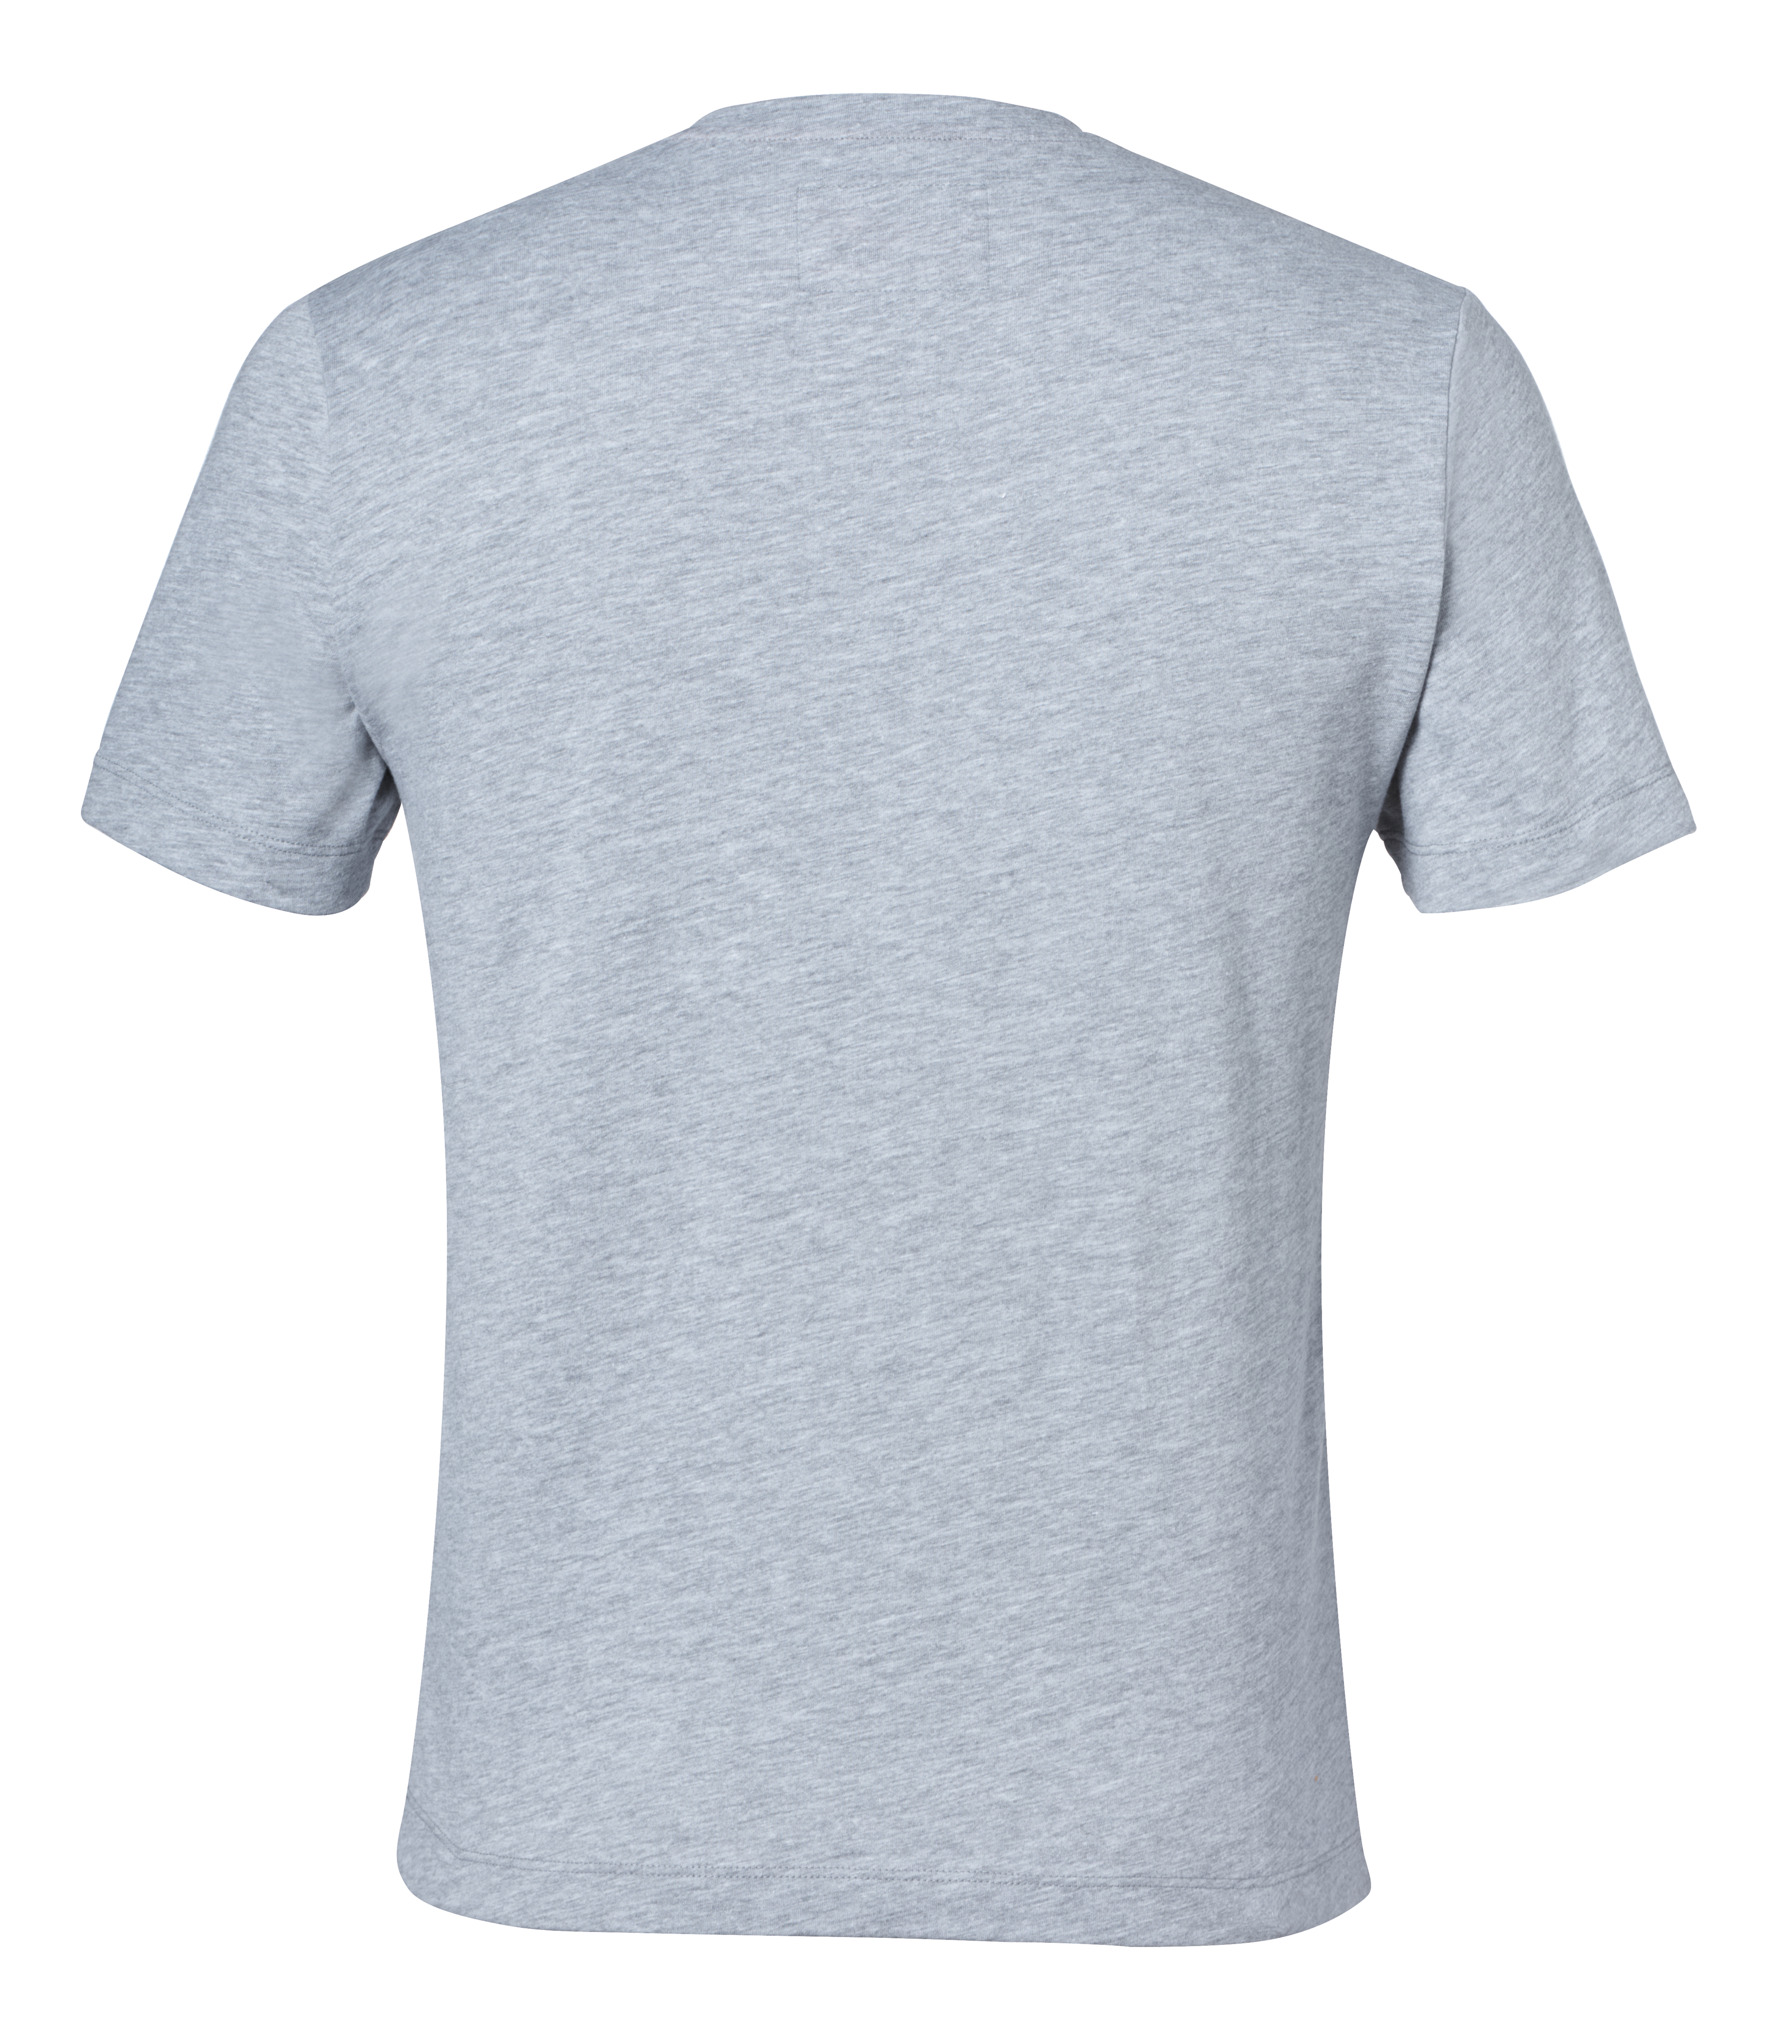 T-shirt « BE TOUGH » Homme gris clair